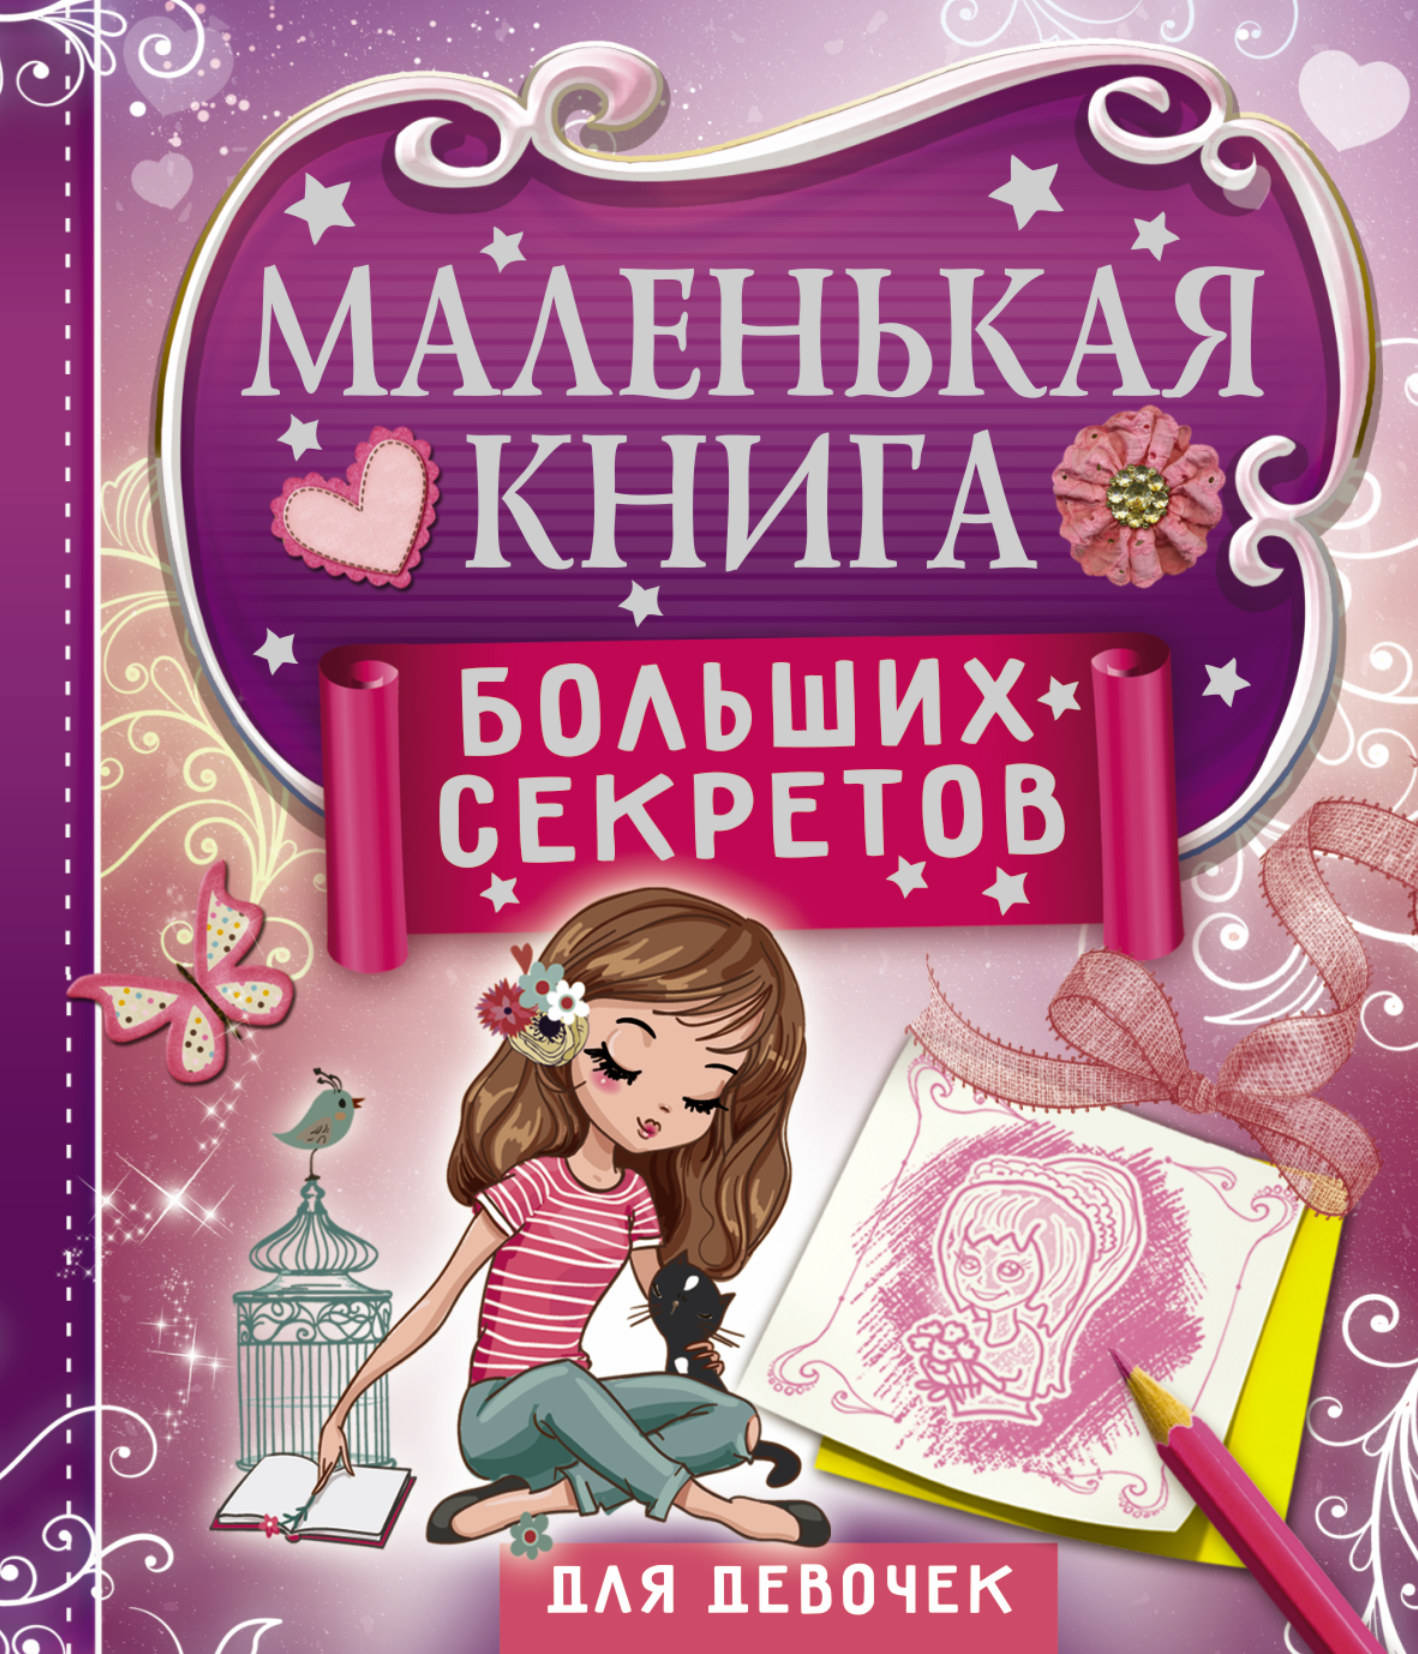 Дневник девочки книга. Книга для девочек. Интересные книги для девочек. Современные книги для детей. Интересные детские книги.